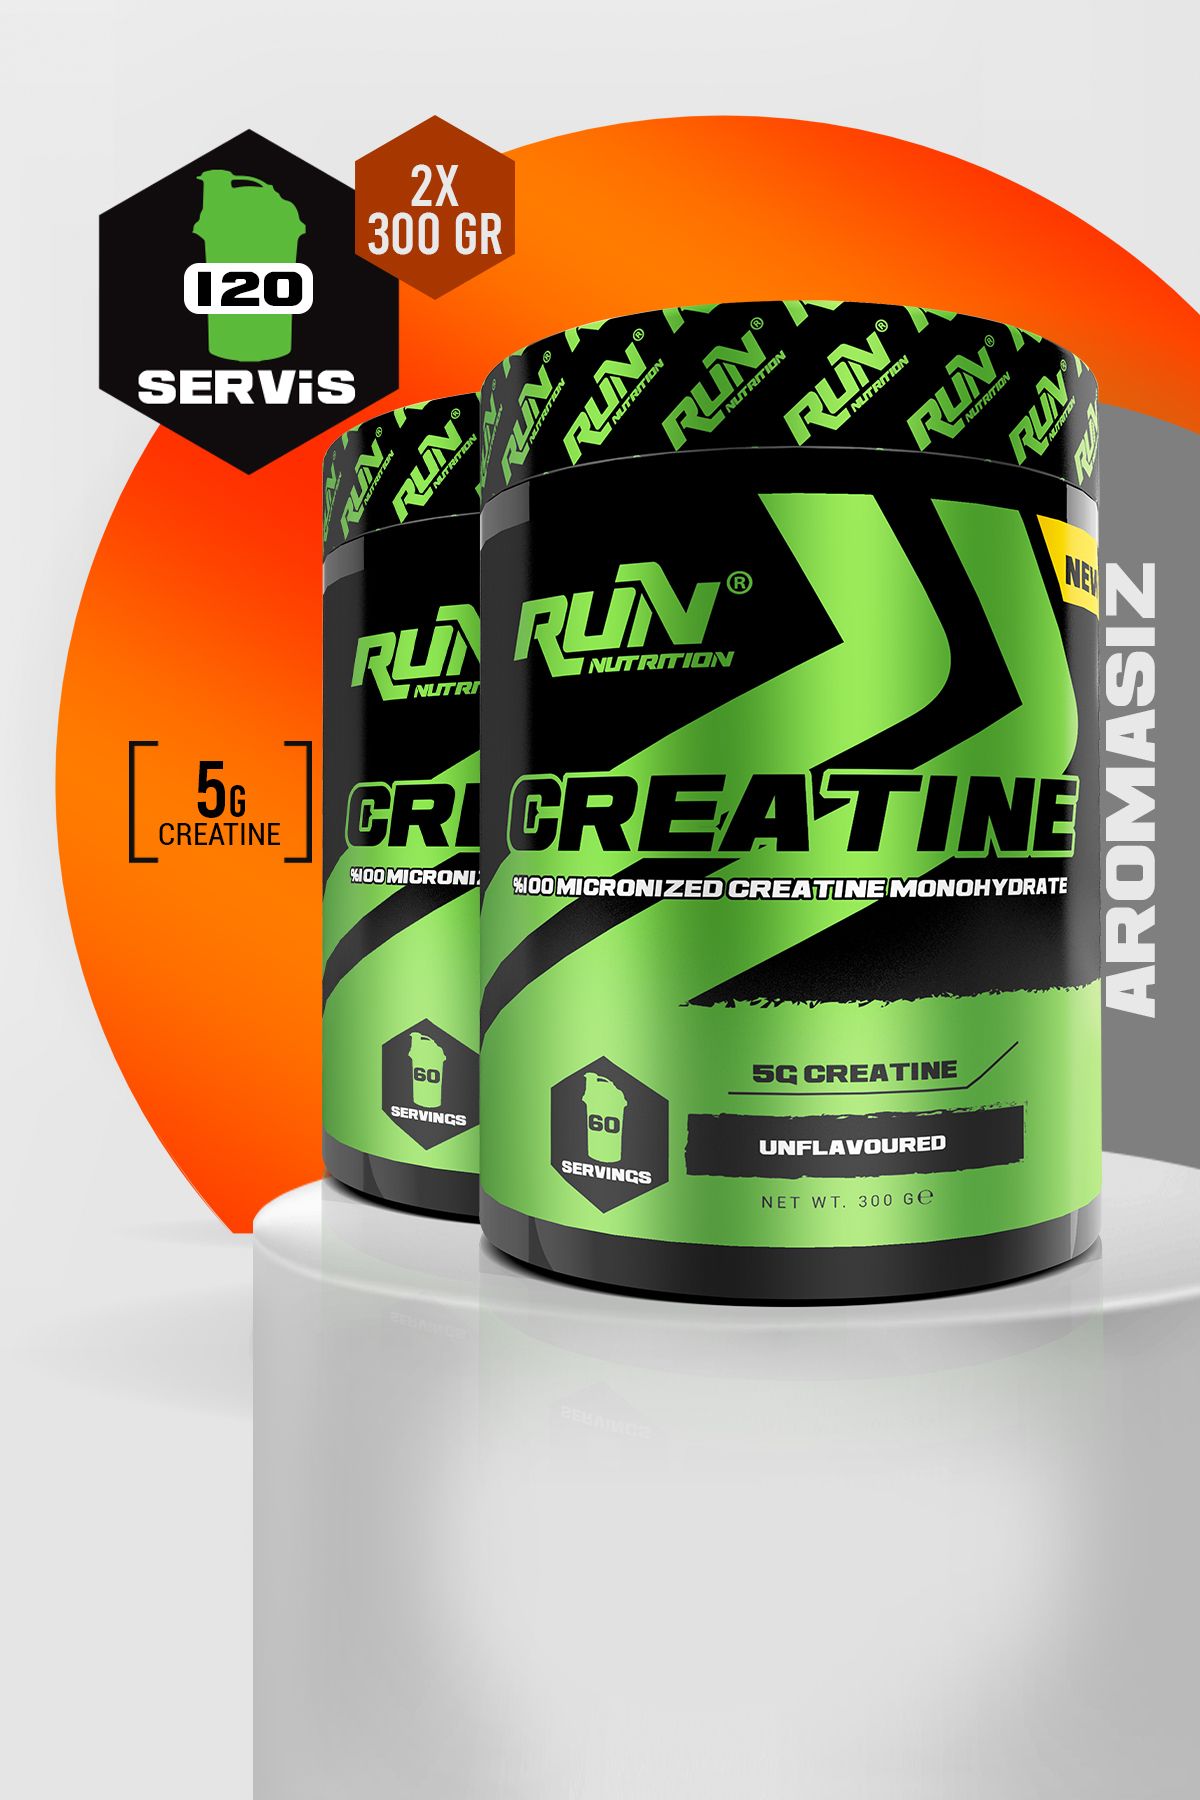 Run Nutrition Creatine x 2 ADET - 600g - 120 Servis - Aromasız